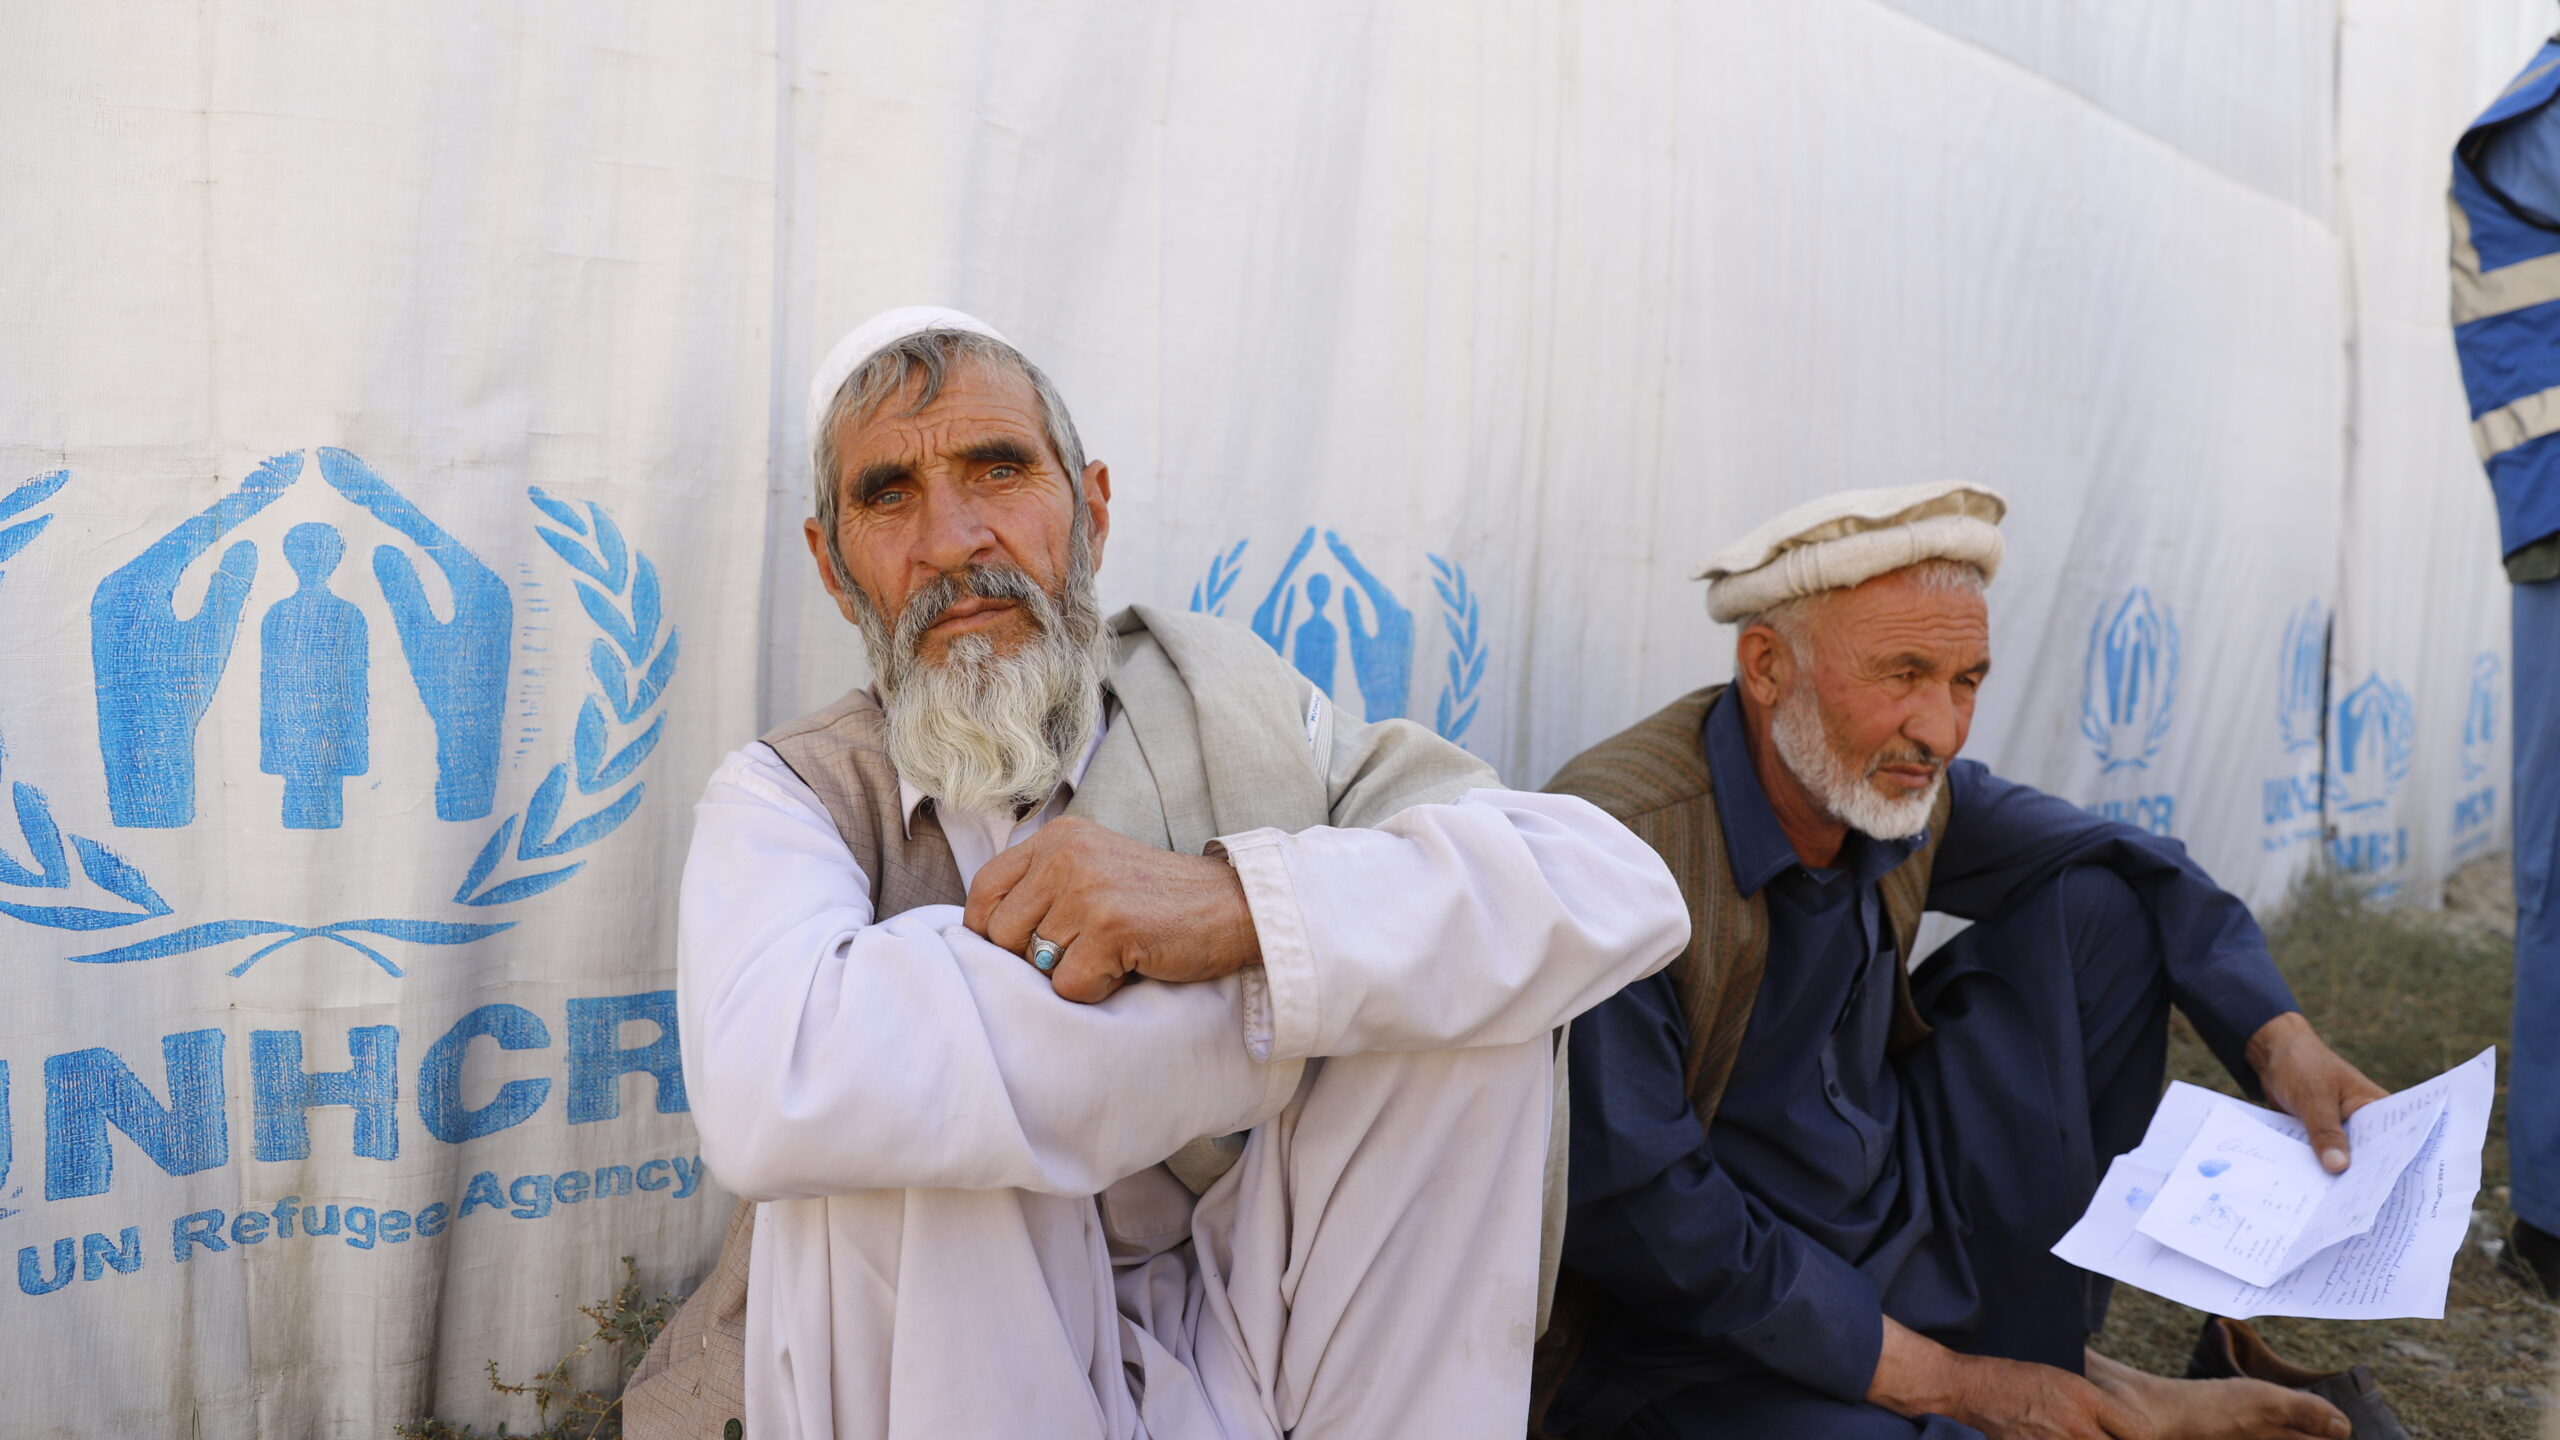 Zerwali, 65 ans (à gauche), est grand-père et chef d'une famille de 26 personnes. Il a déménagé à Kaboul avec sa famille en août, mais vit désormais à la belle étoile dans le quartier de Chahar Asyab, à Kaboul. © UNHCR/Tony Aseh